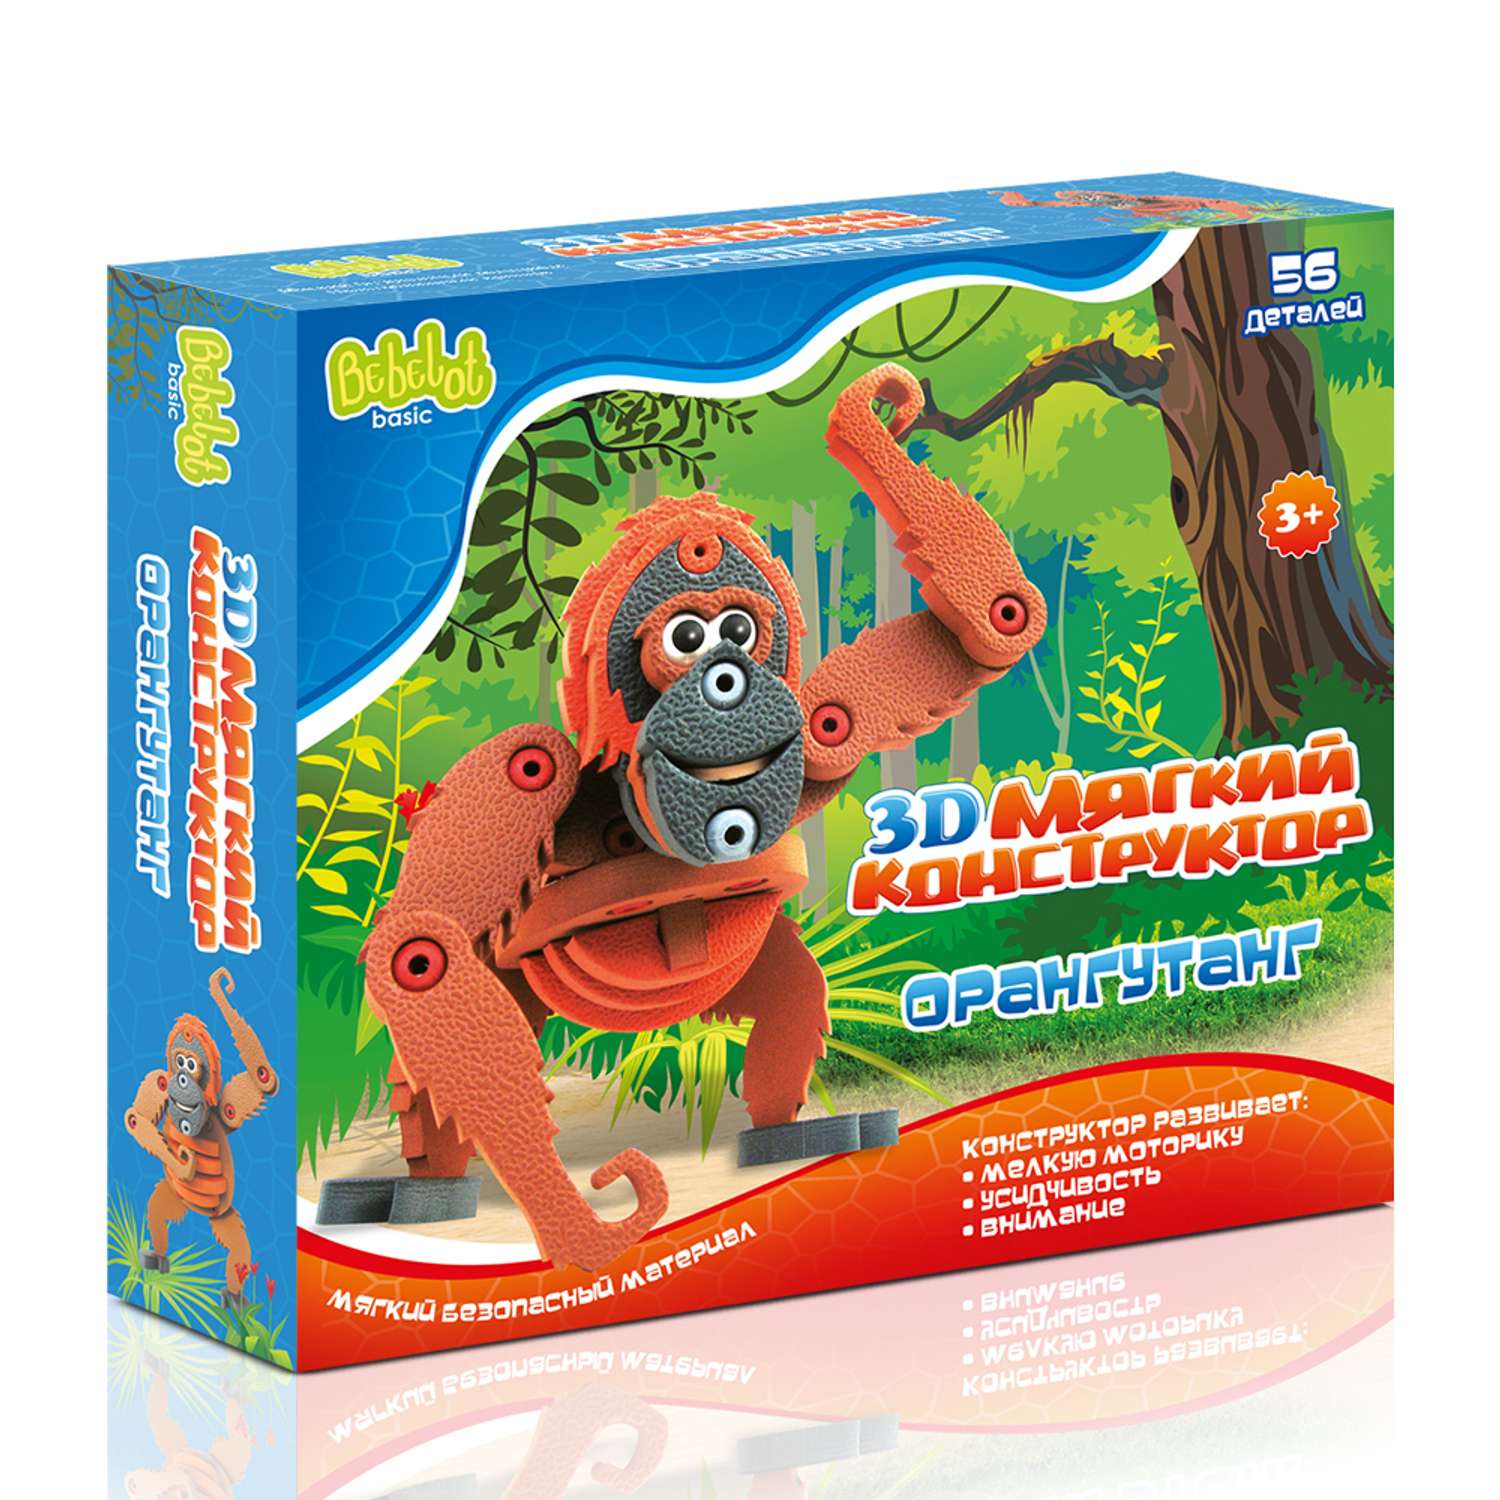 3D конструктор Bebelot Орангутанг 56 деталей - фото 2